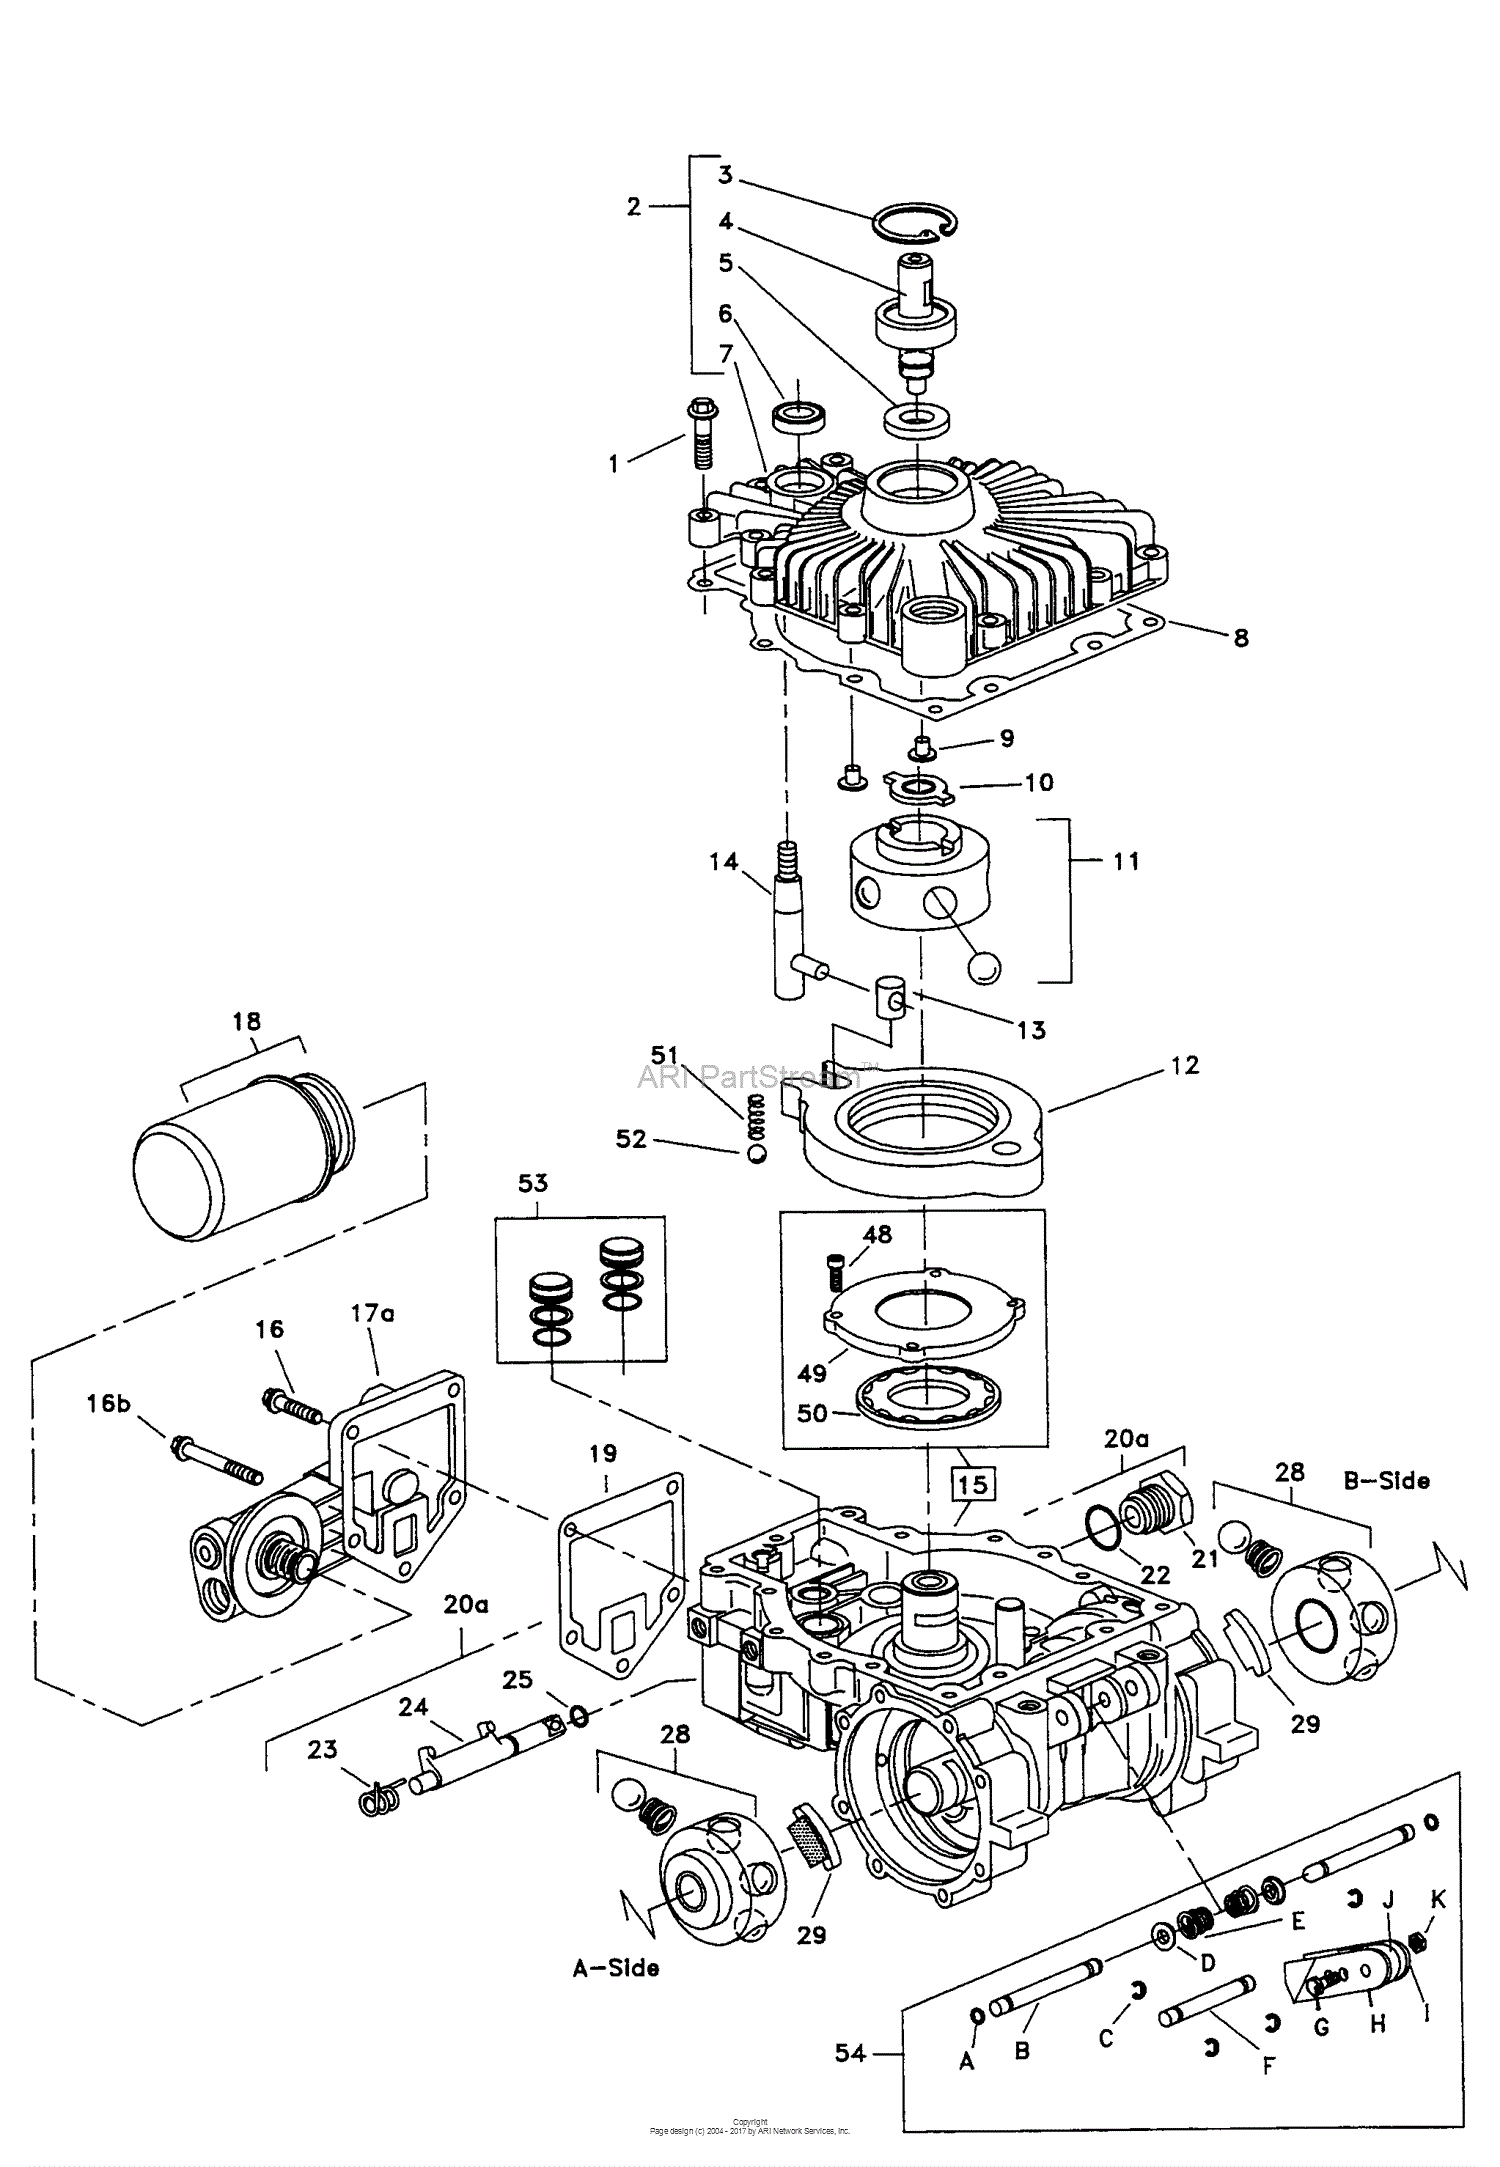 13 20 Hp Kohler Engine Wiring Diagram - Free Wiring Diagram Source